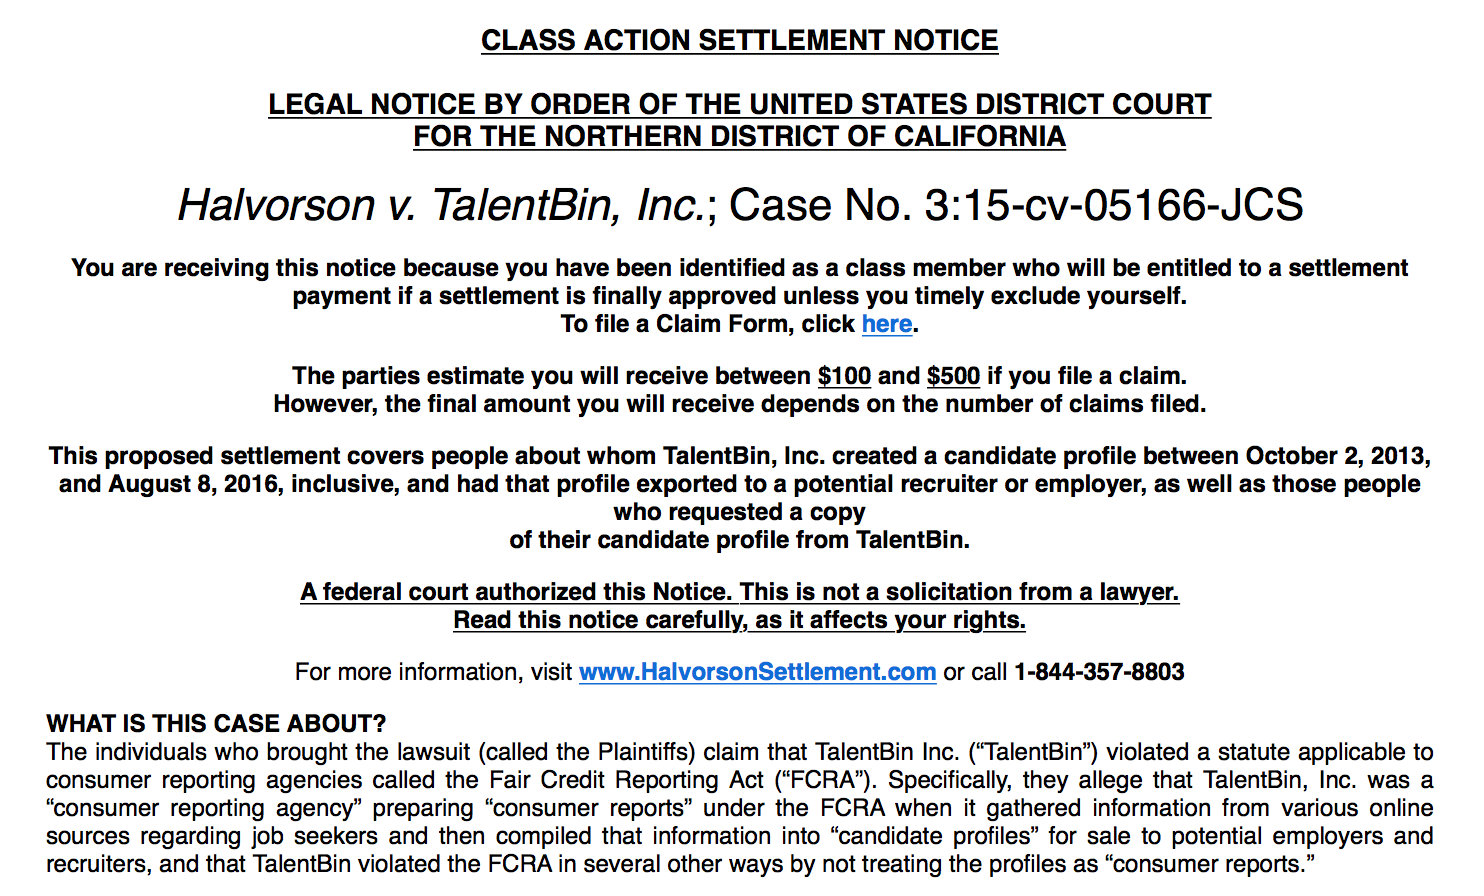 TalentBin class action lawsuit